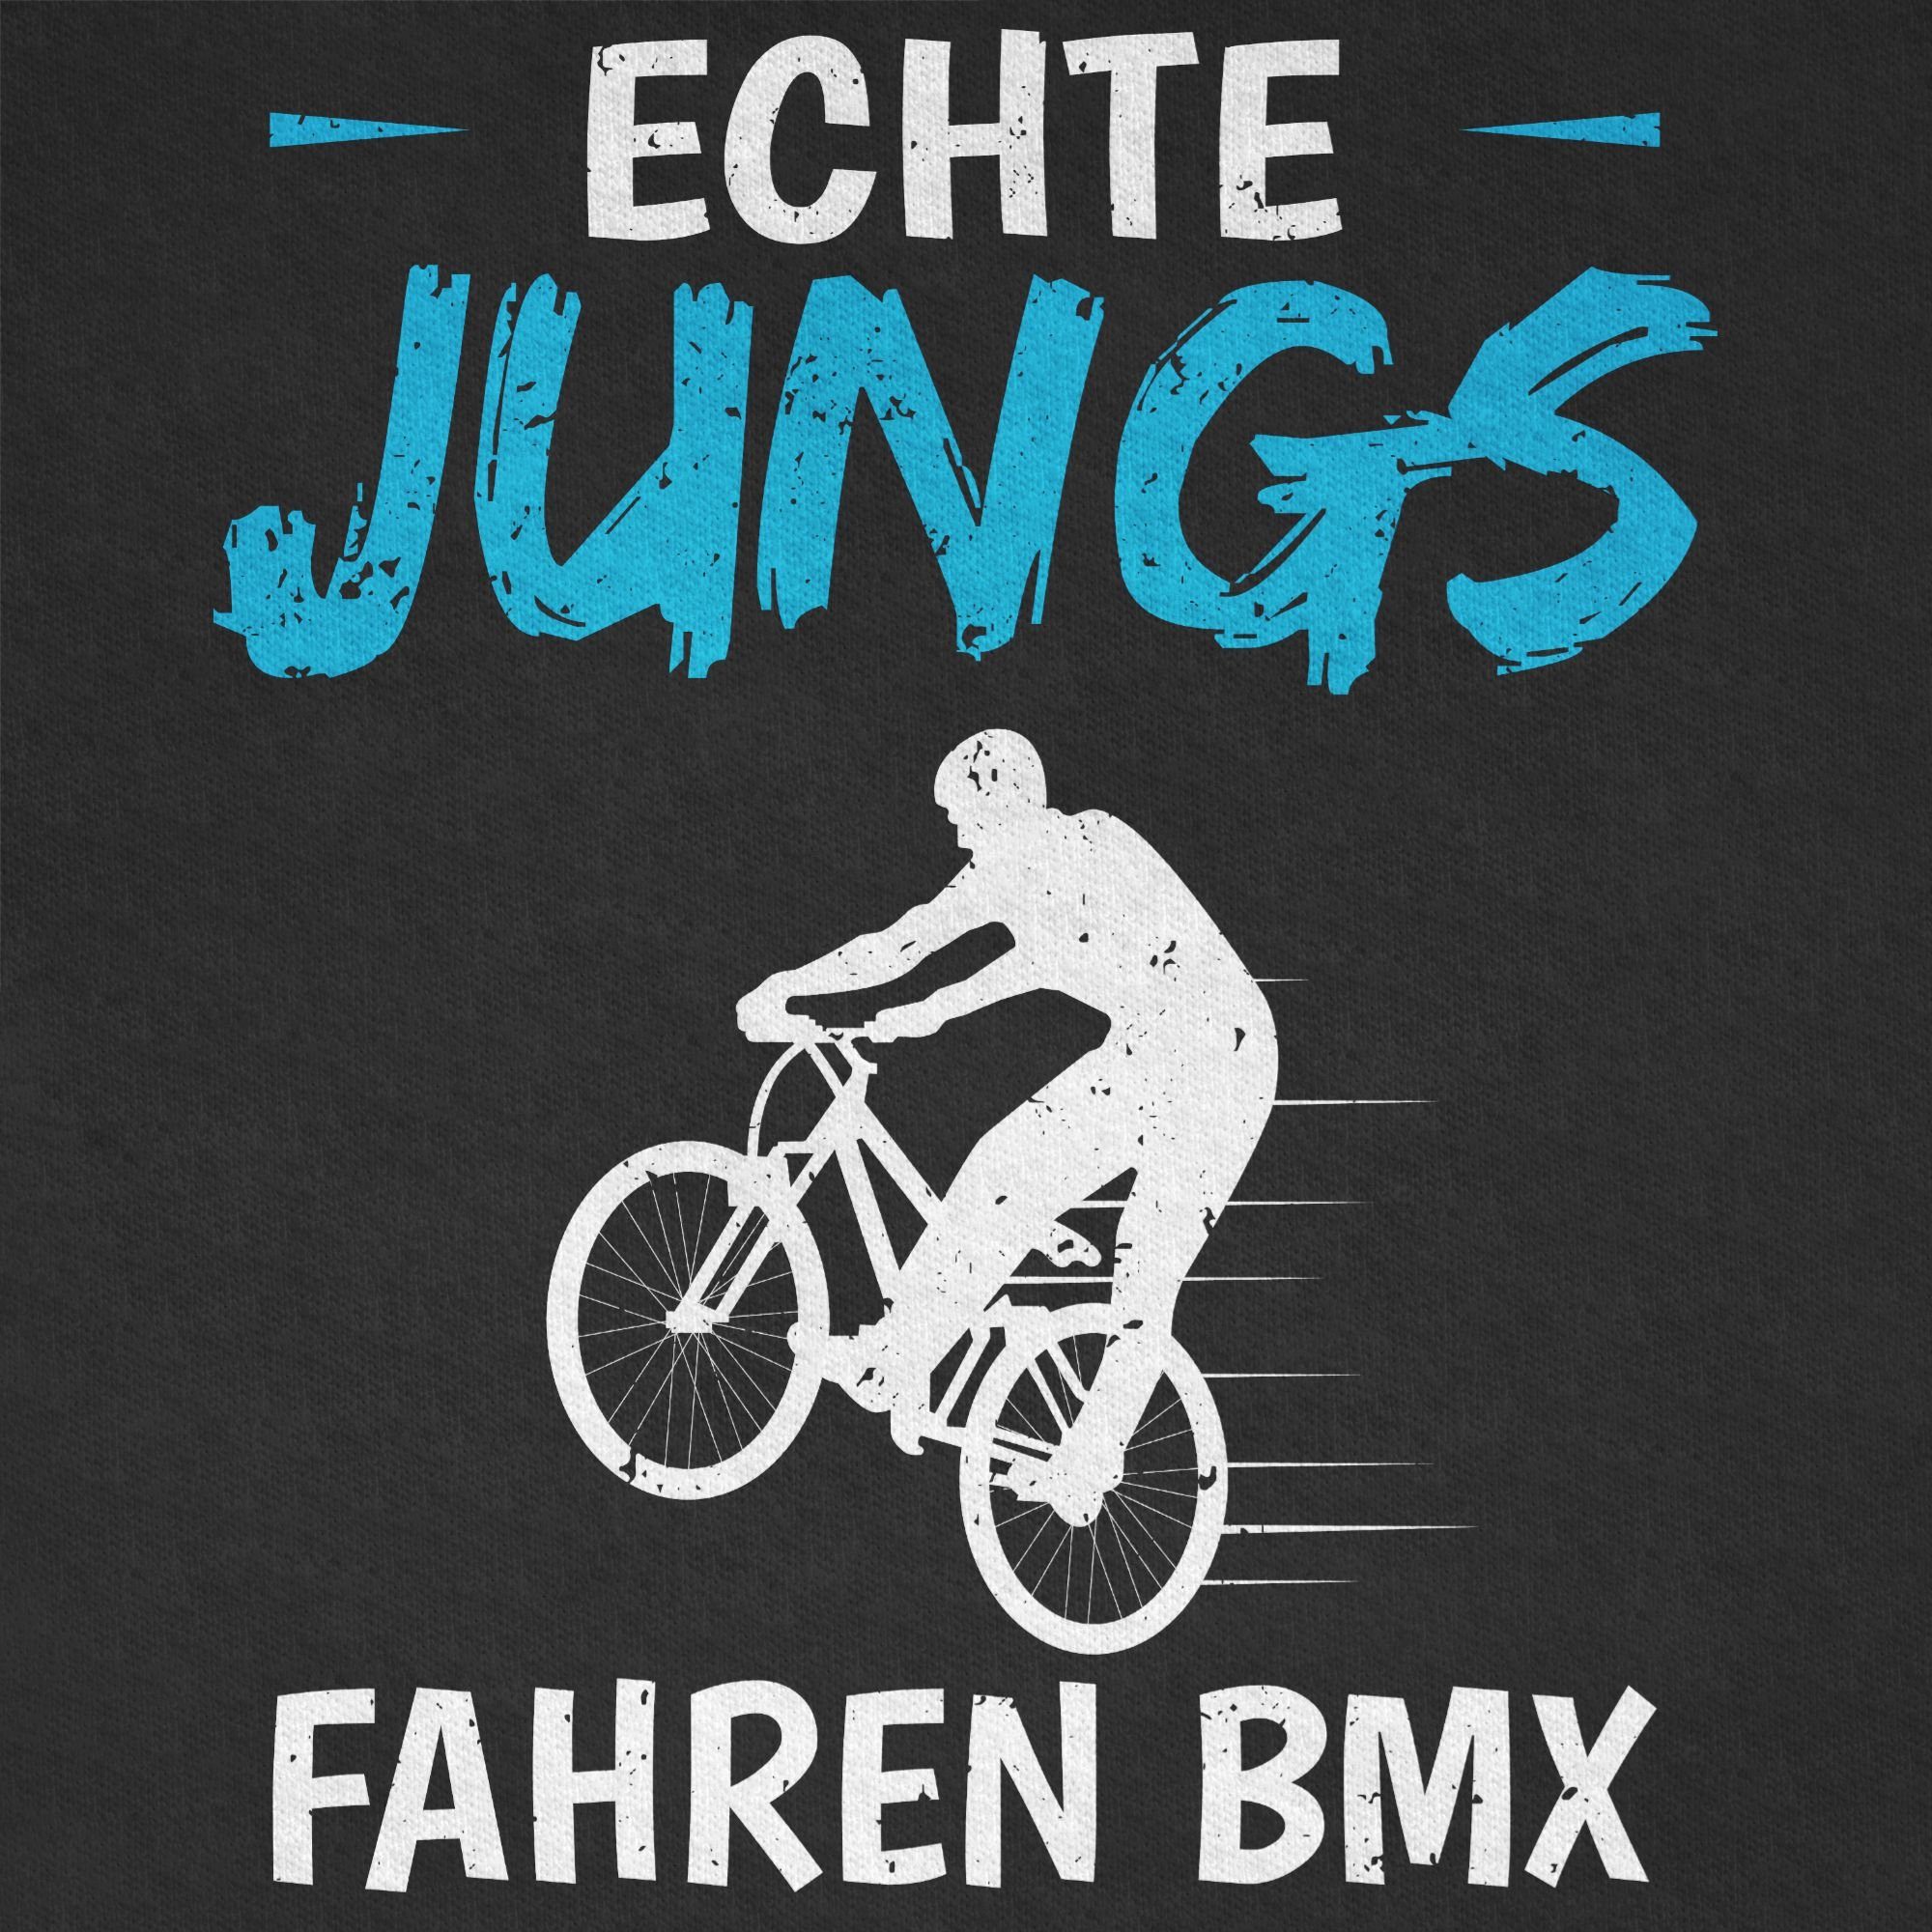 Kleidung Kinder fahren Sport Jungs BMX Shirtracer T-Shirt 1 Echte Schwarz